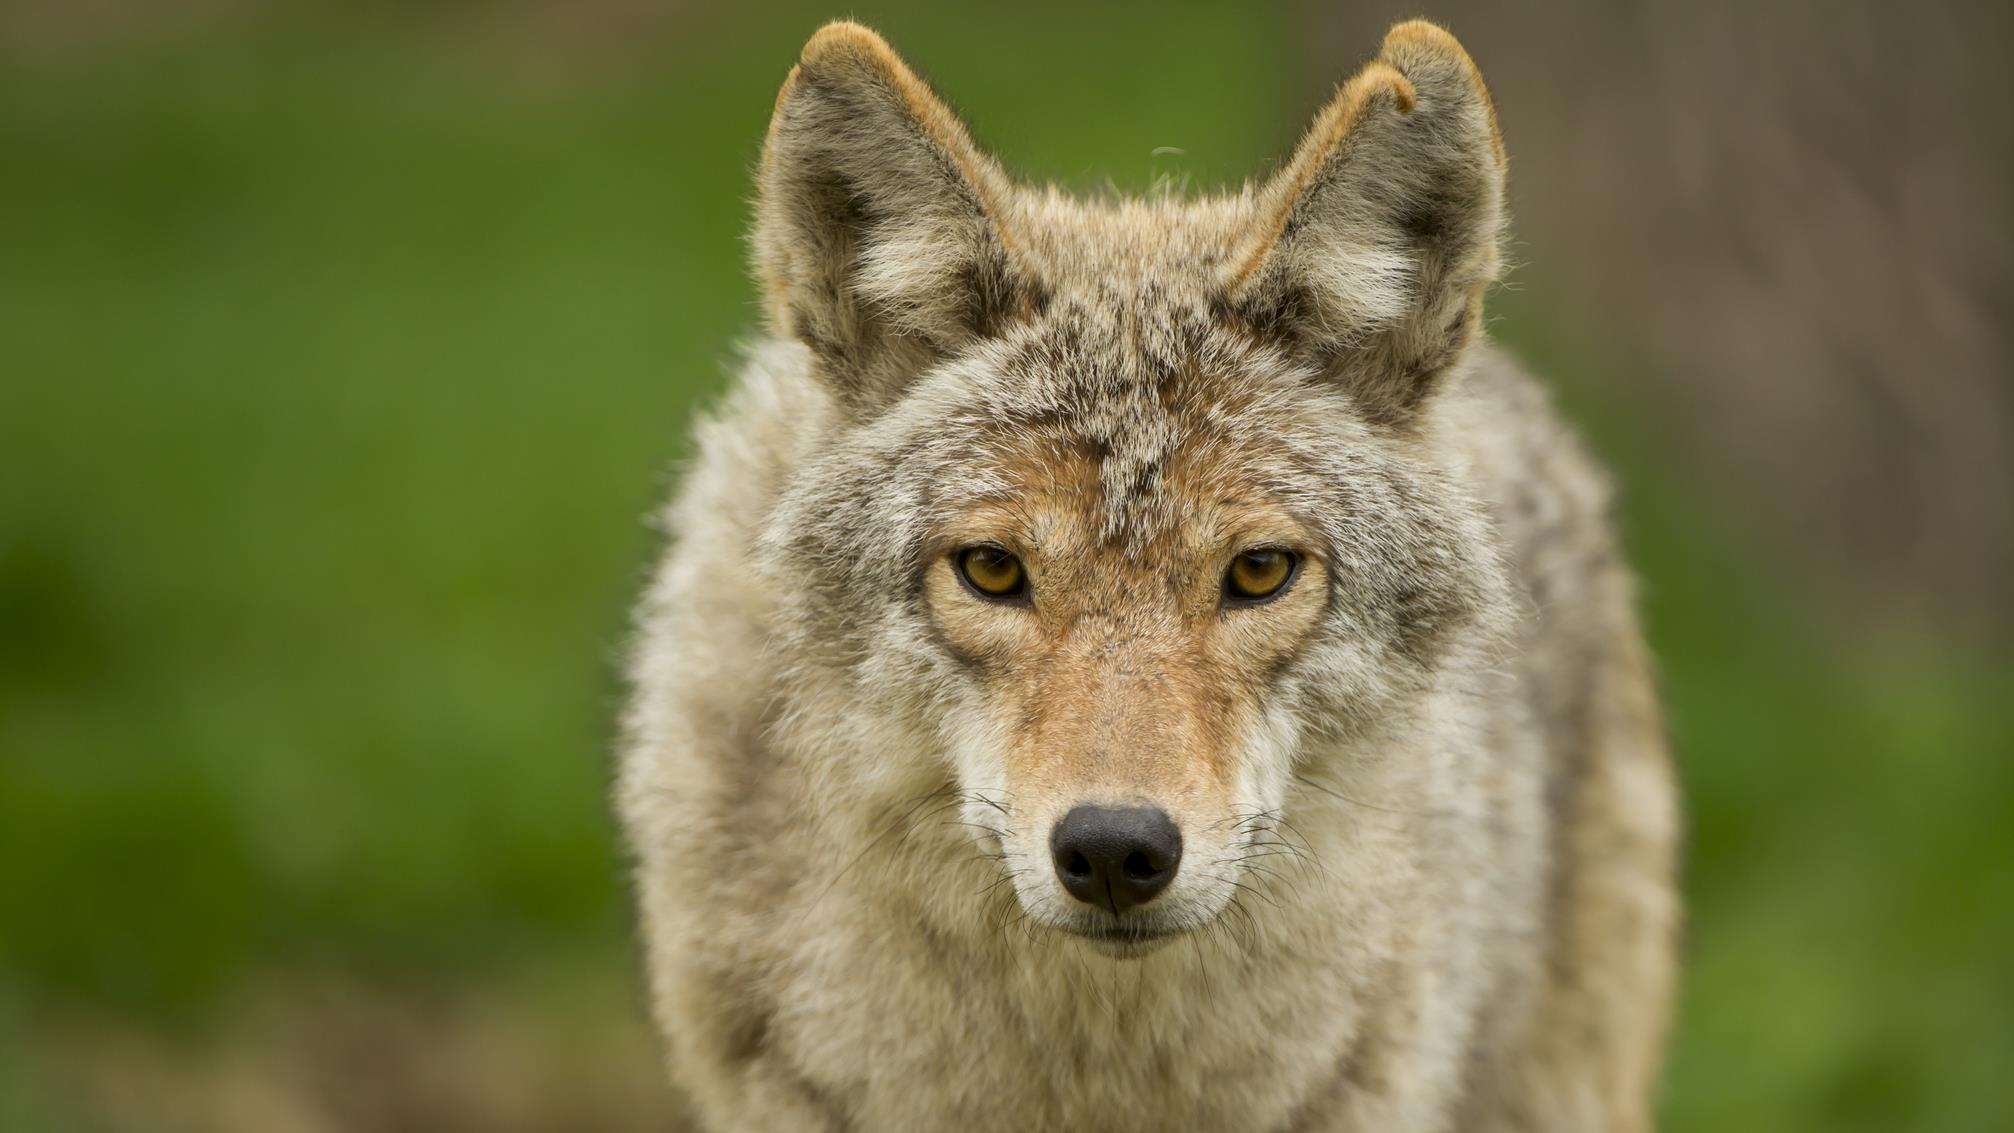 Quoi faire si vous vous retrouvez nez à nez avec un coyote
Quoi faire si vous vous retrouvez nez à nez avec un coyote